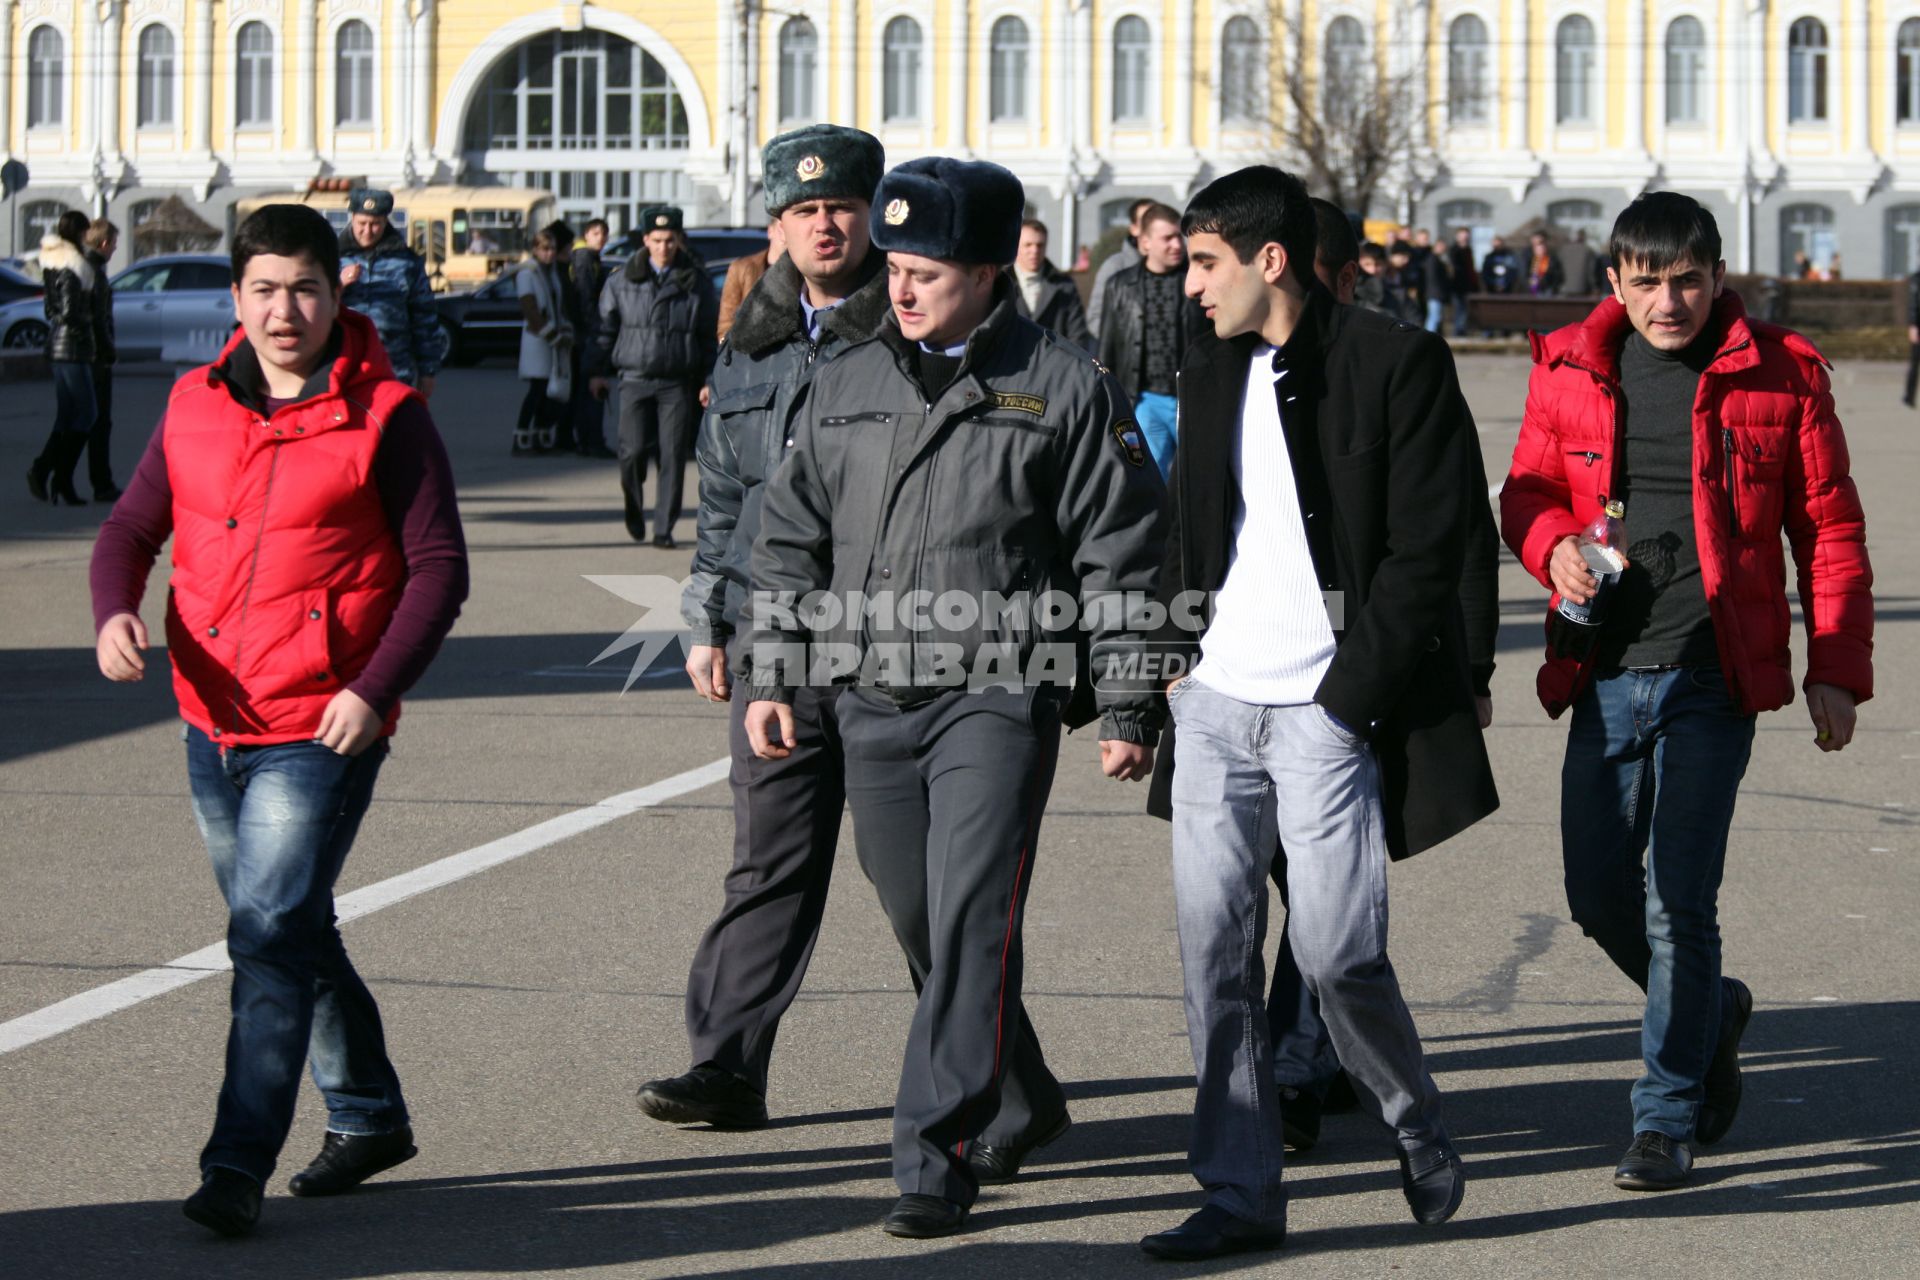 Попытка провести несанкционированный митинг в Ставрополе. На снимке: полиция на митинге в окружении людей южных национальностей.